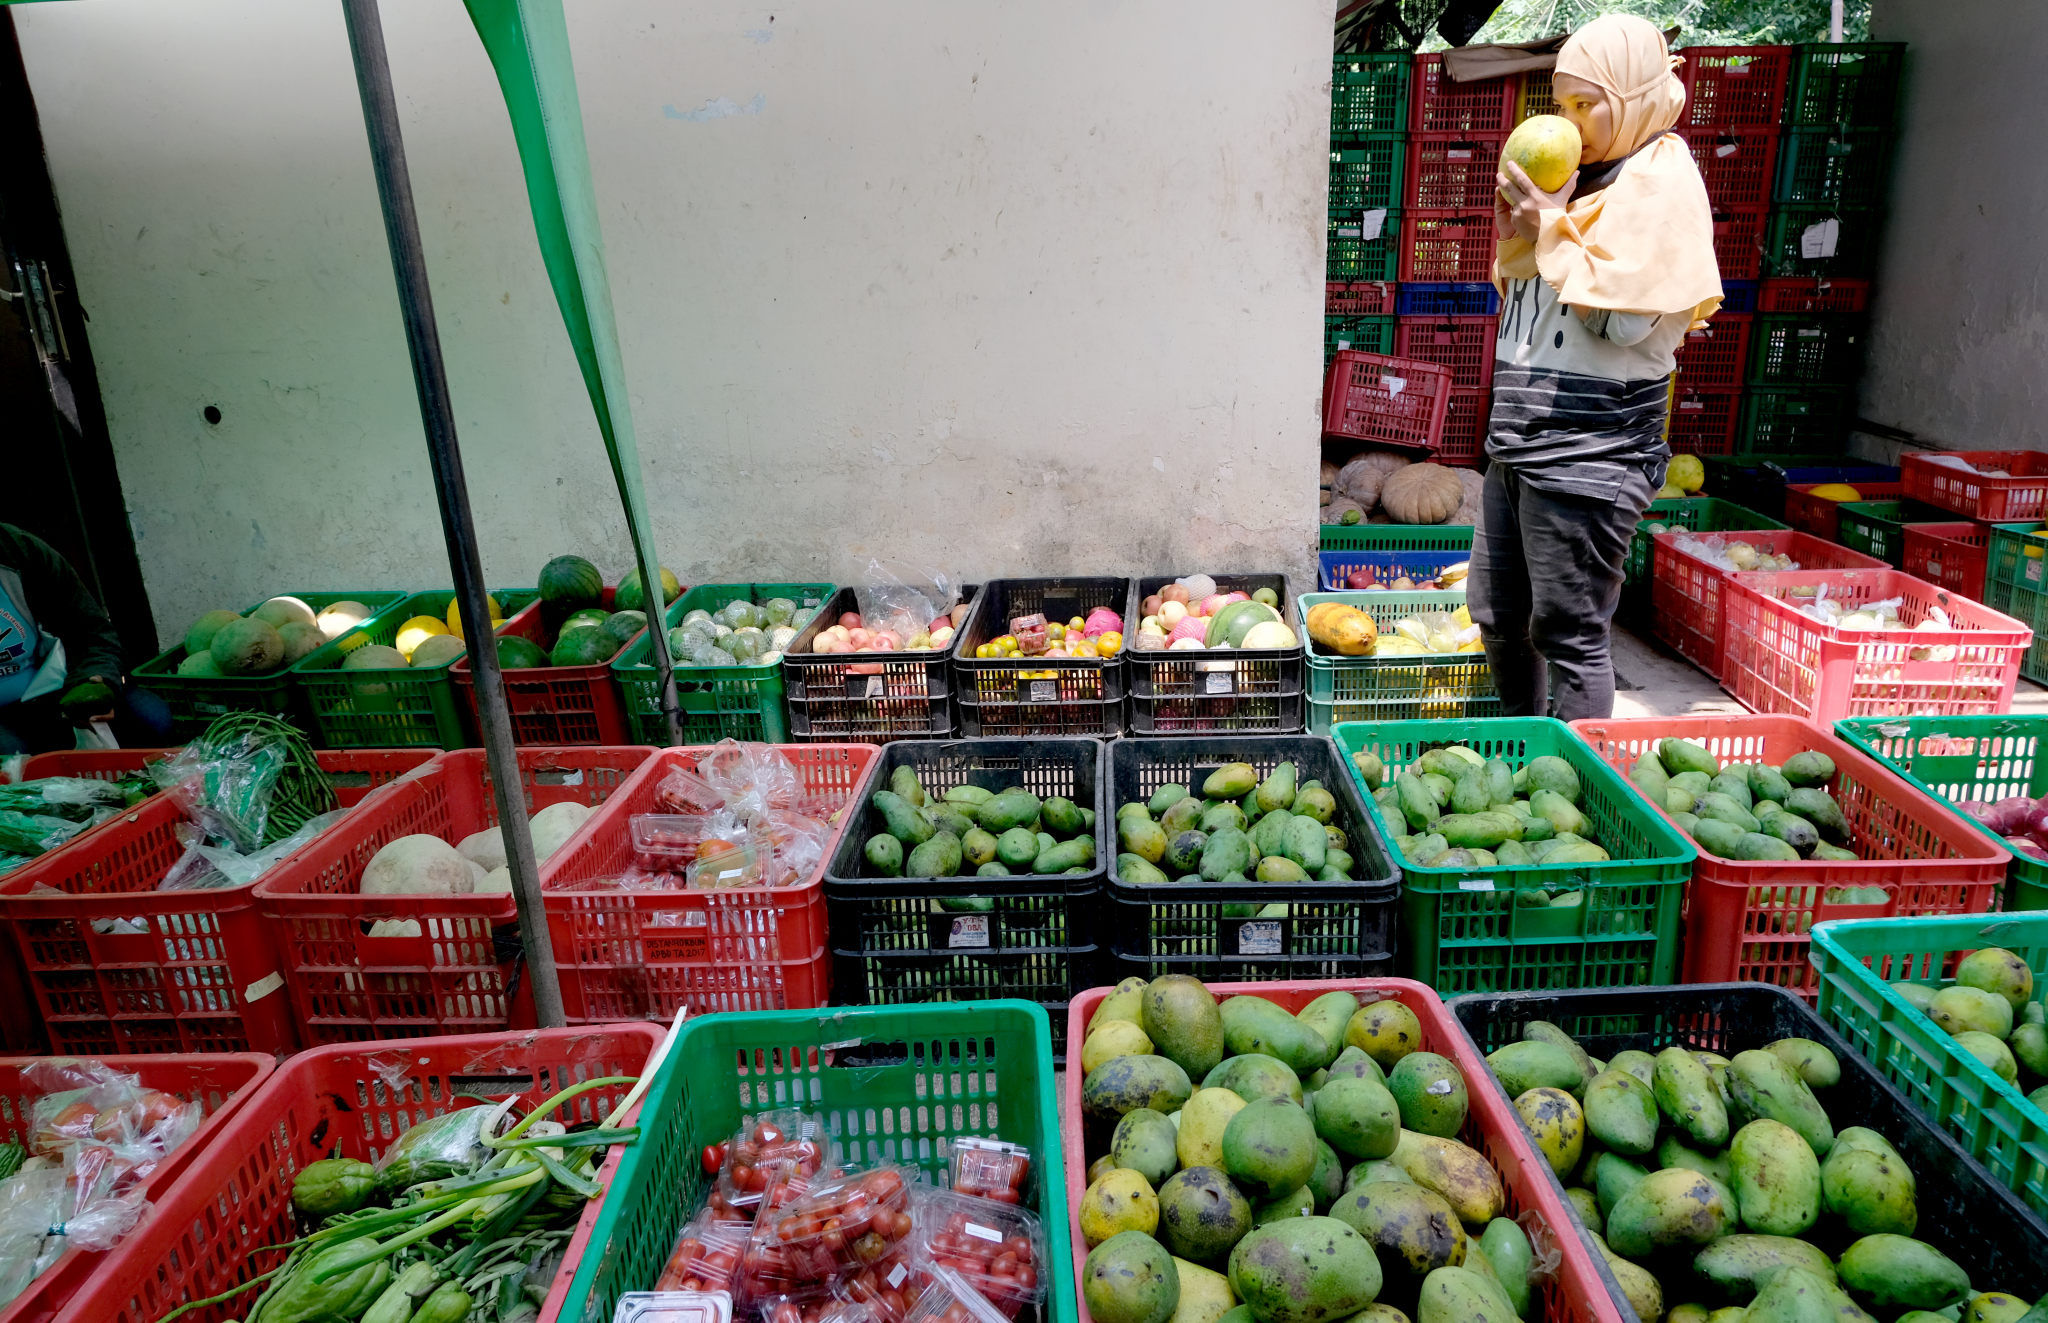 <p>Warga memilih buah-buahan di lapak sayur dan buah hasil sortiran penjual sayur online di kawasan Ragunan, Jakarta, Selasa, 10 November 2020. Foto: Ismail Pohan/TrenAsia</p>
